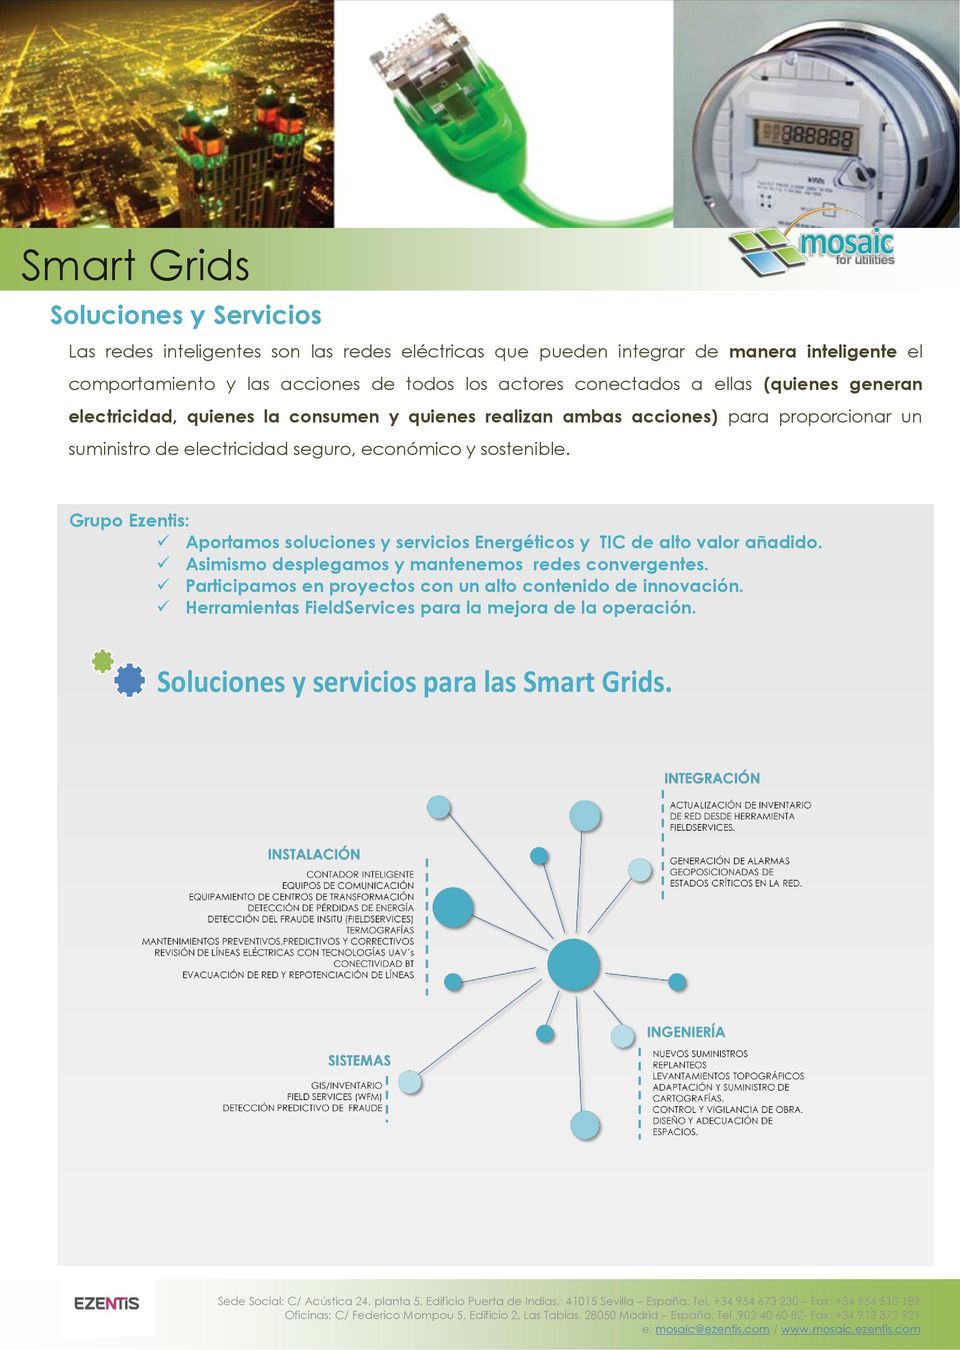 seguro, económico y sostenible. Grupo Ezentis: Aportamos soluciones y servicios Energéticos y TIC de alto valor añadido.